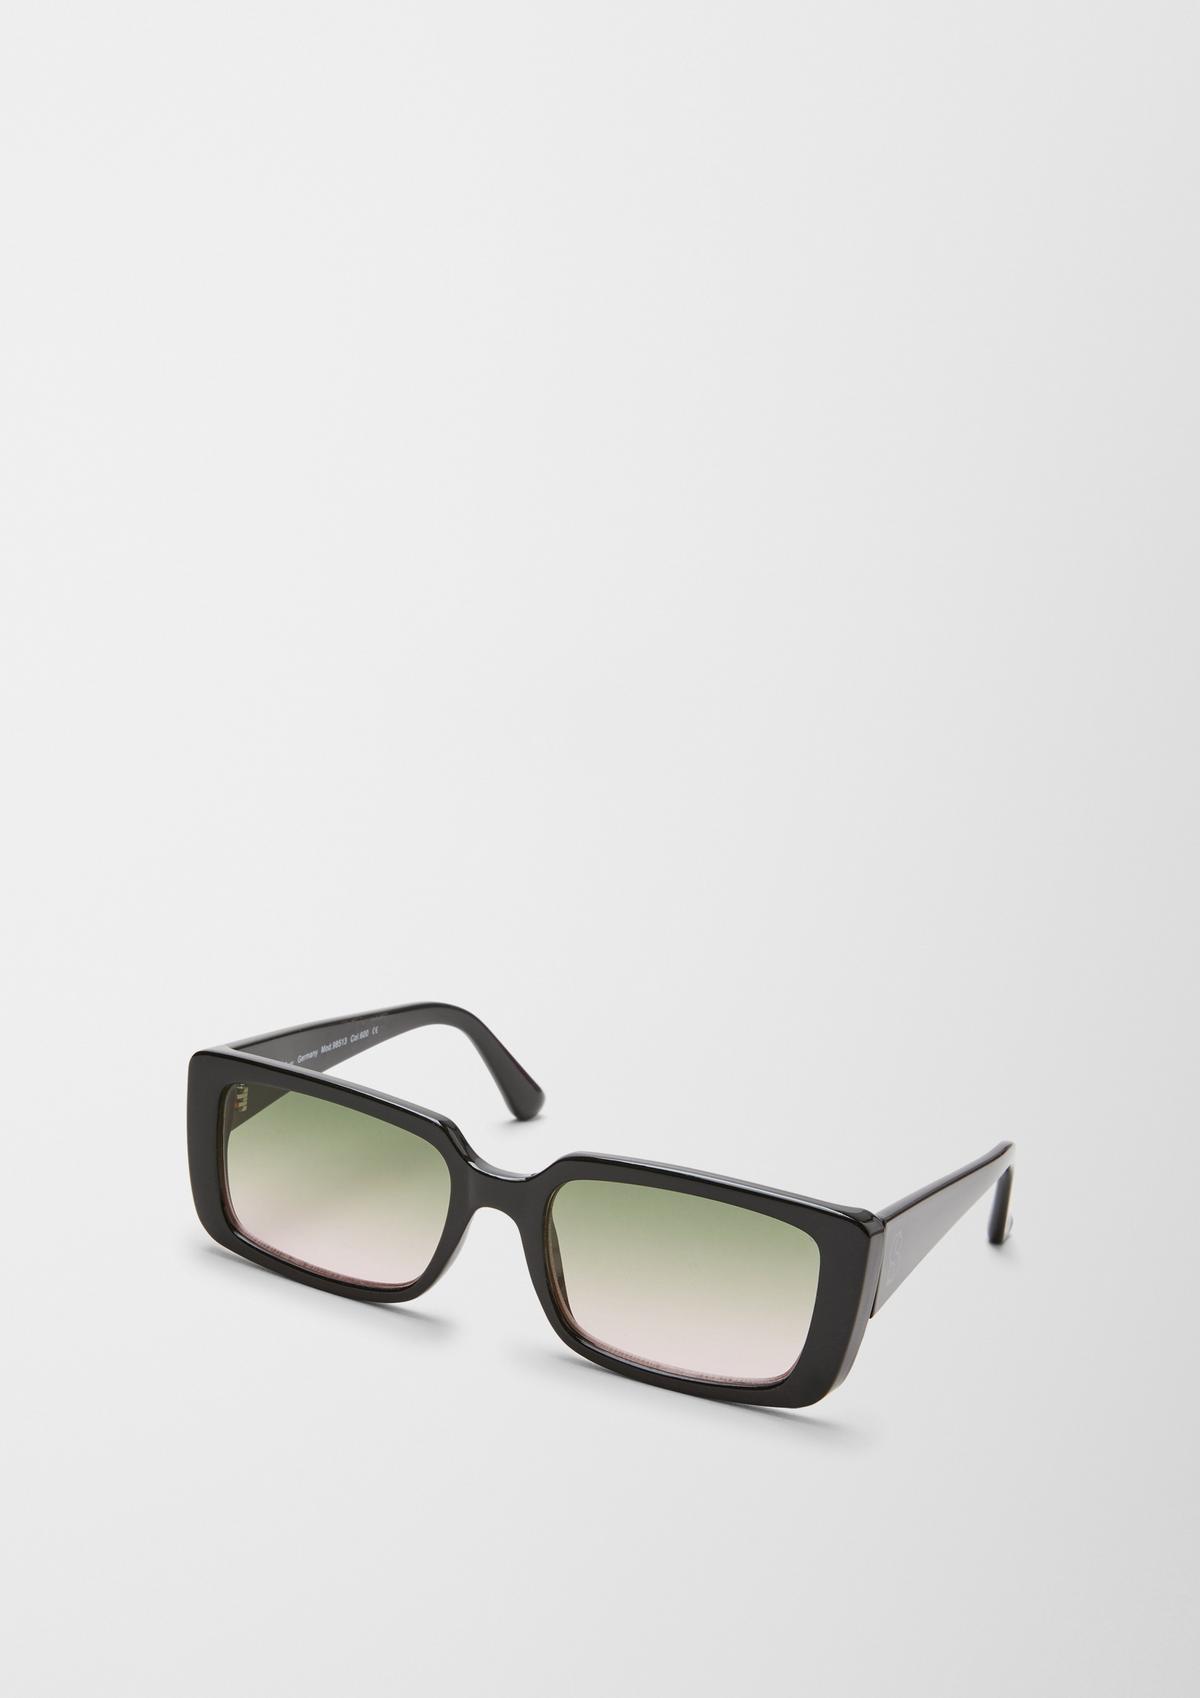 Kantige Sonnenbrille mit breiter Fassung